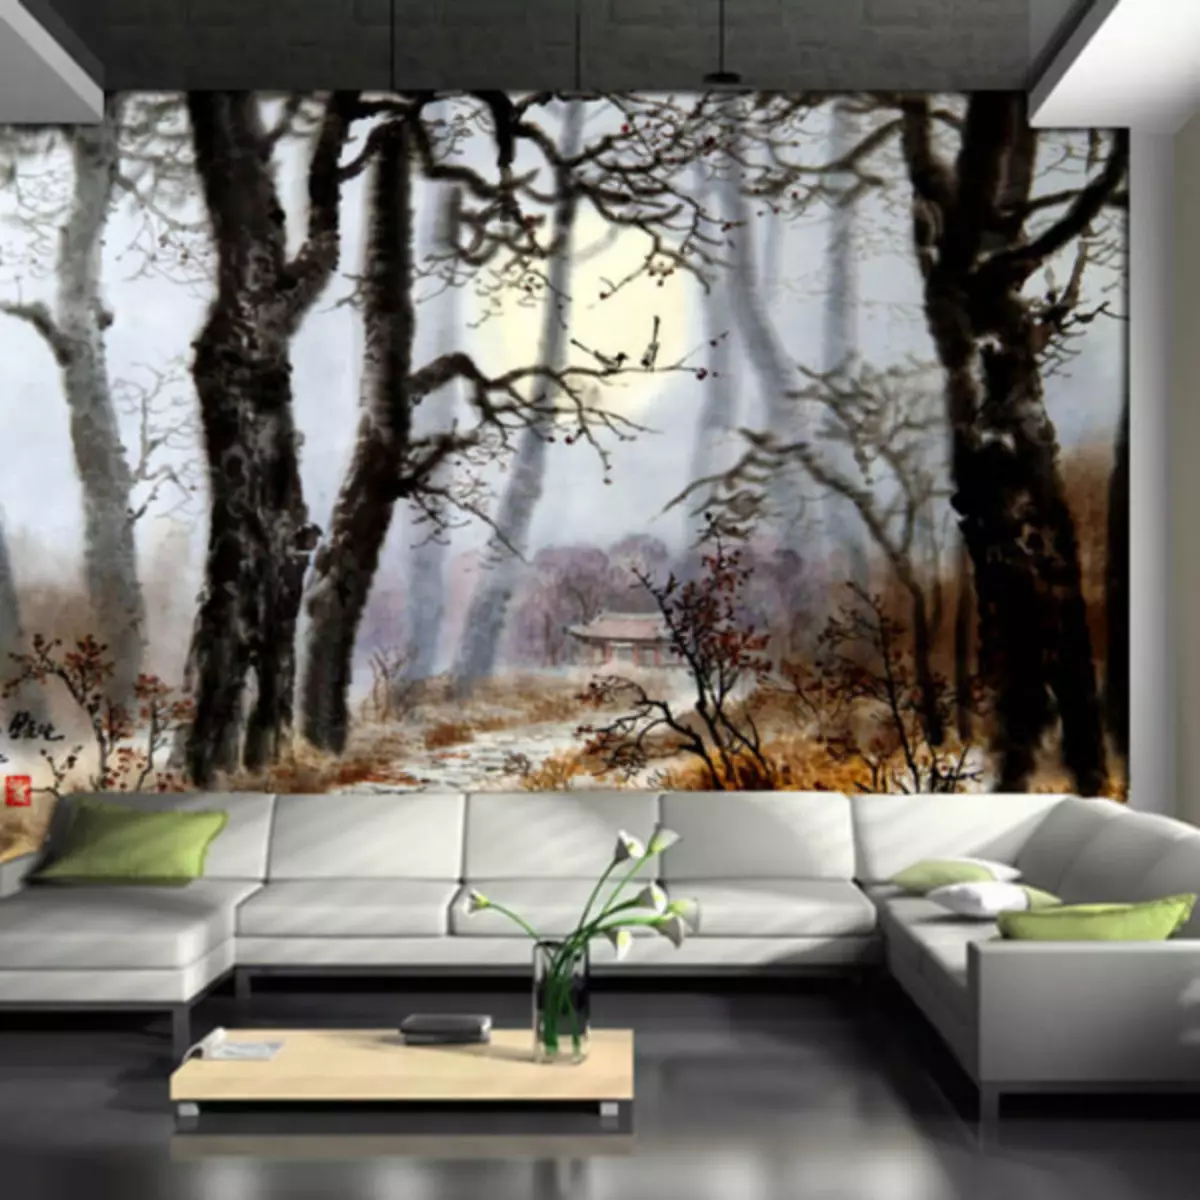 Wallpaper com árvores na parede criará uma atmosfera incrível de descanso e descanso